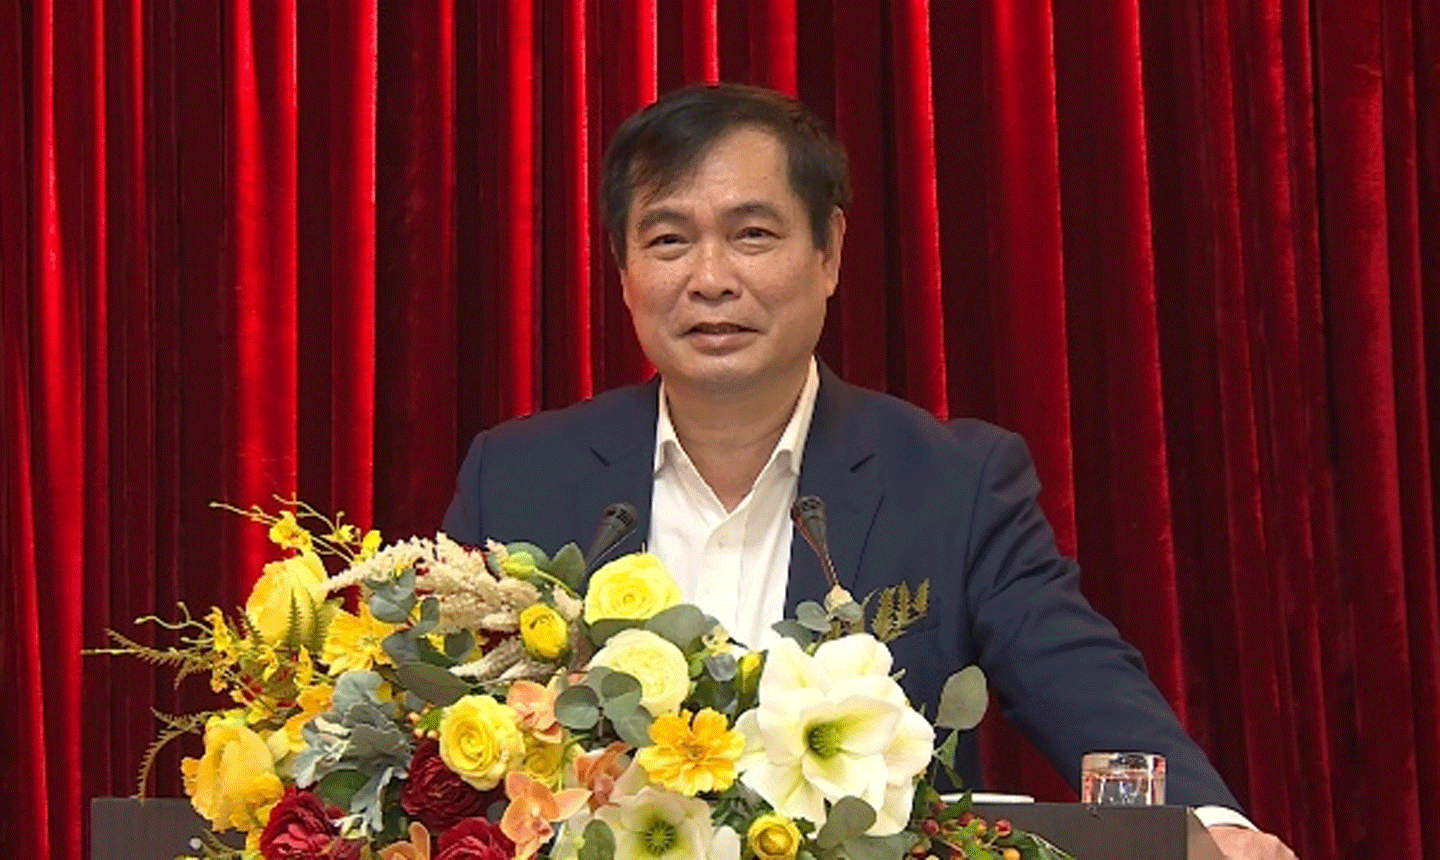 Đồng chí Phan Xuân Thủy, Phó trưởng Ban Tuyên giáo Trung ương phát biểu kết luận Hội nghị.